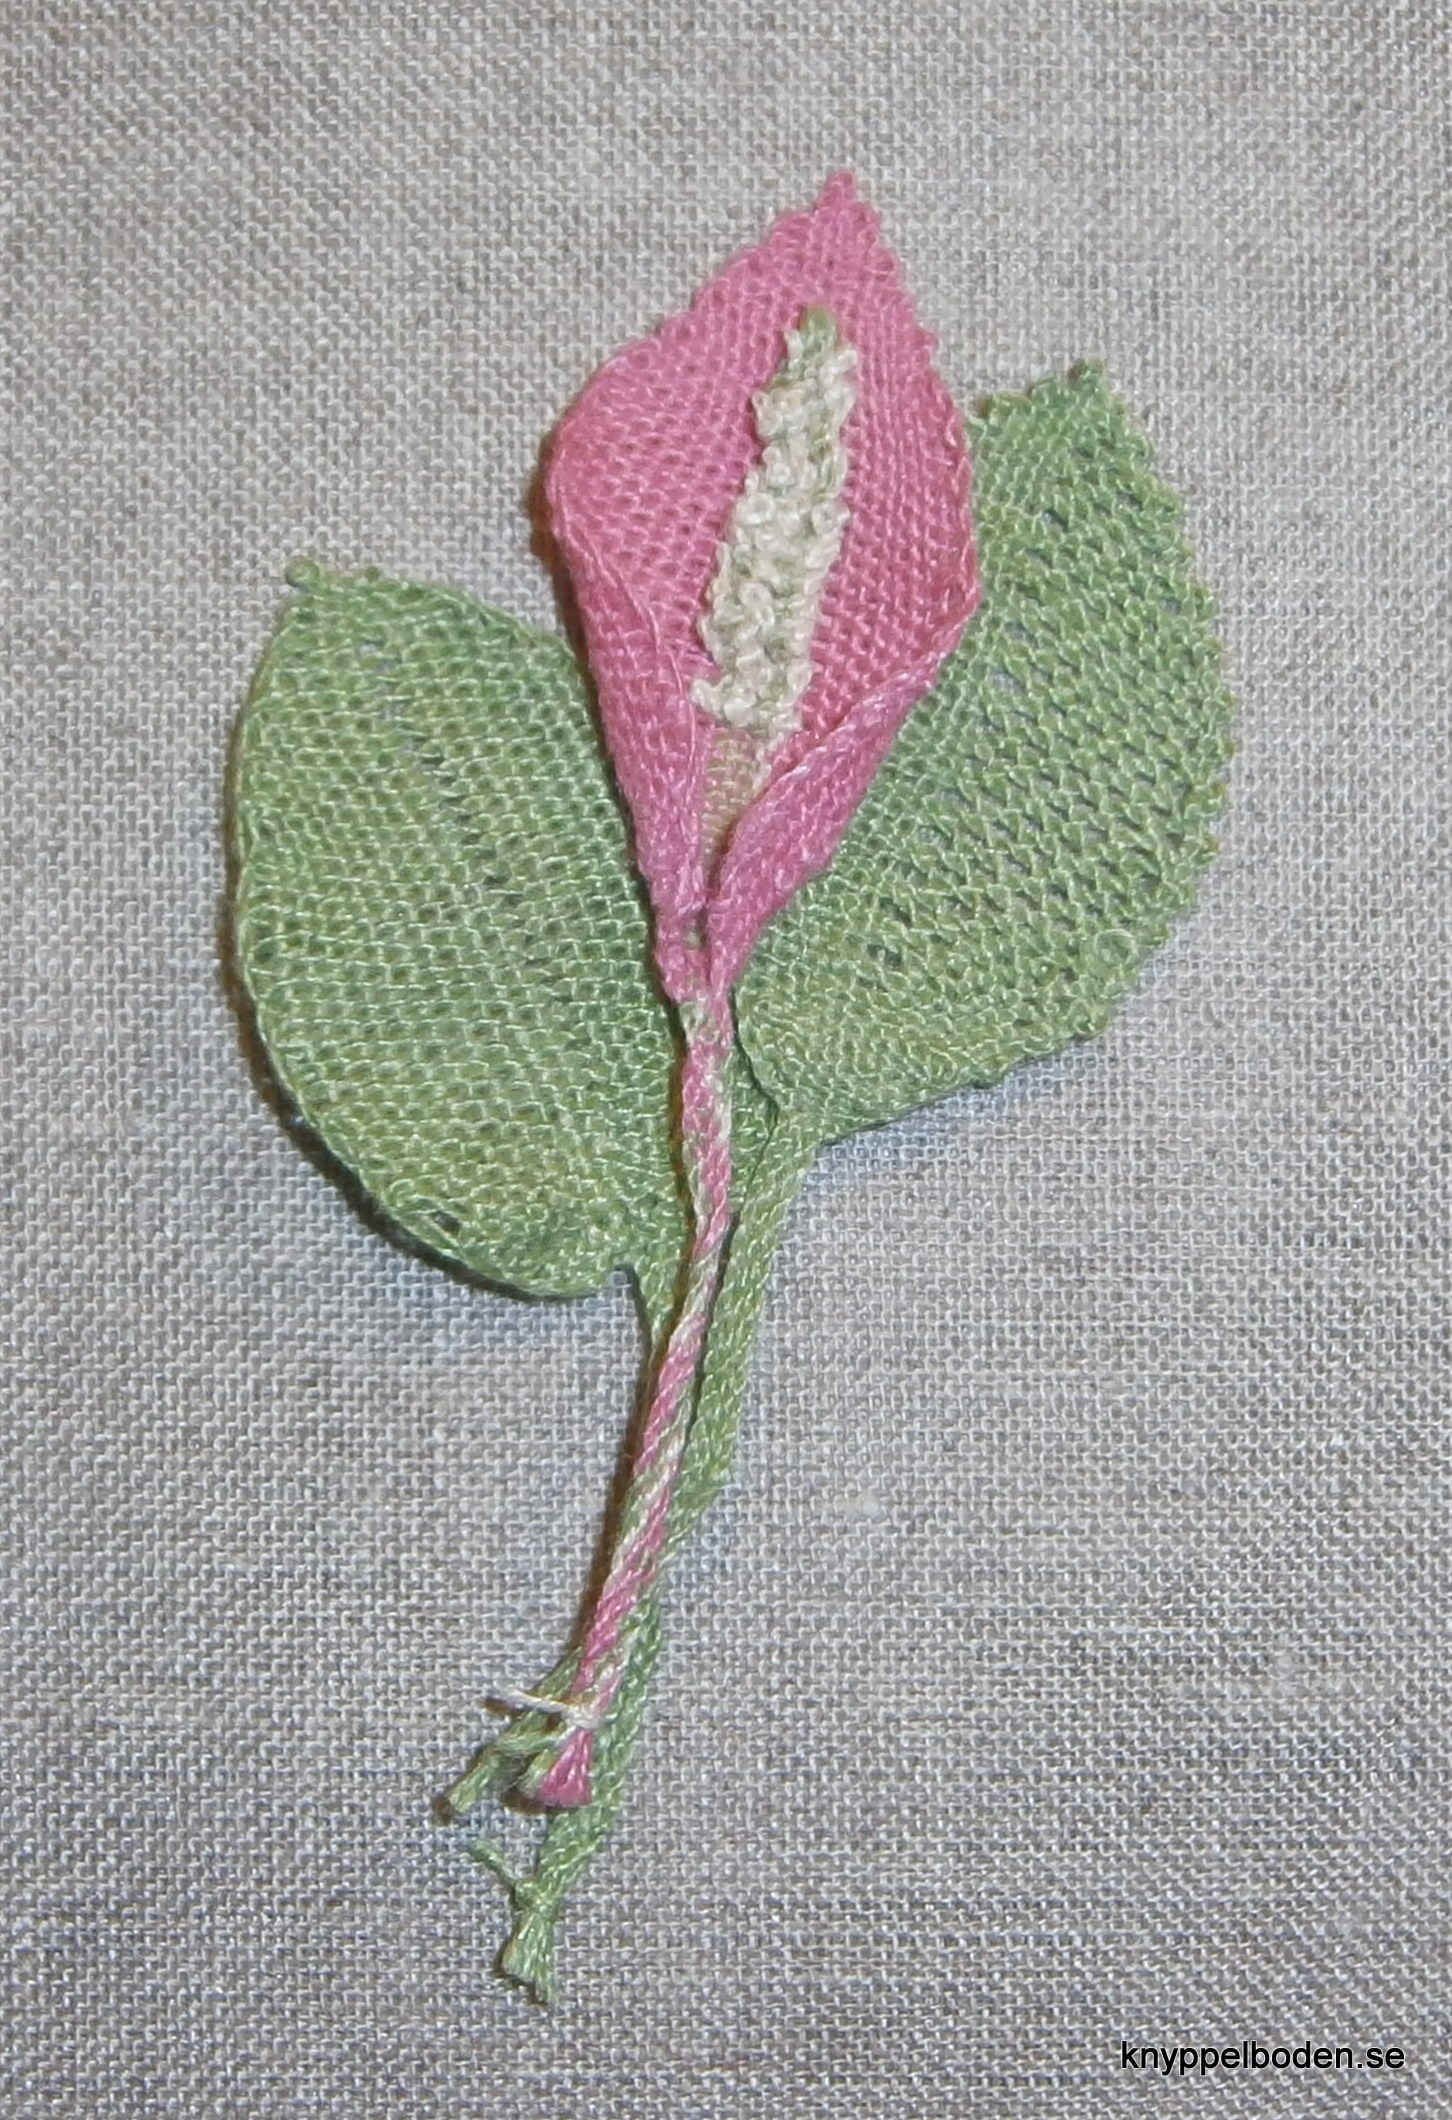 Rosenkalla blomma 4x4 cm, blad 3x4 cm